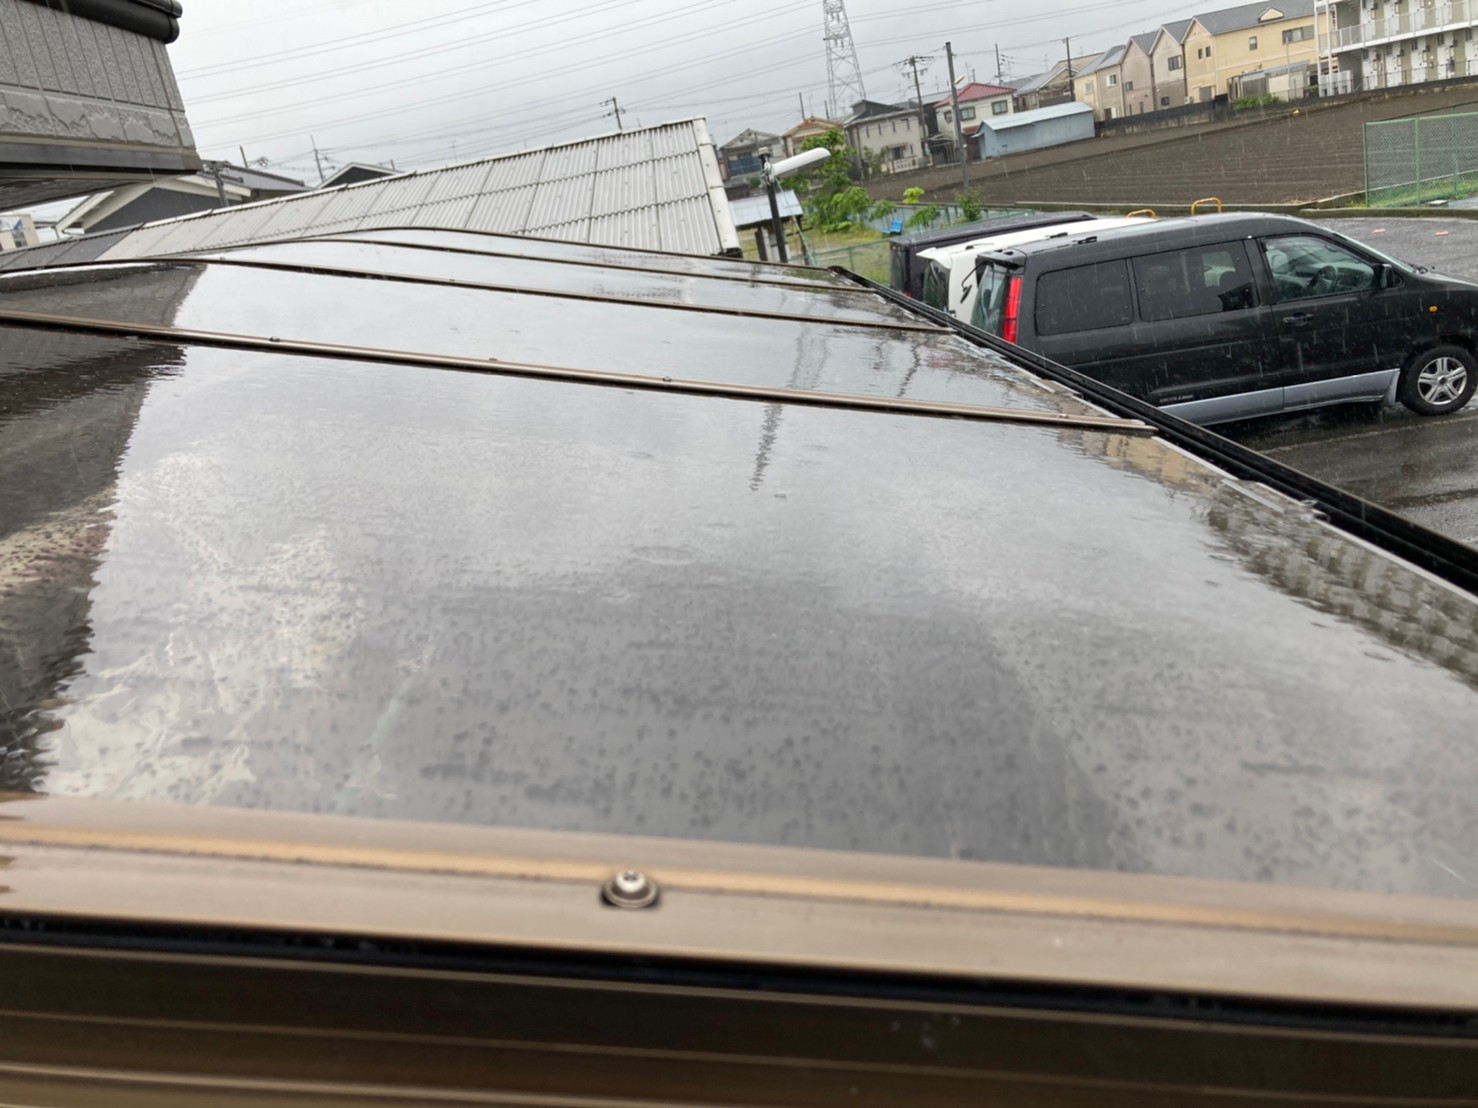 八尾市で台風の影響でテラス屋根が飛んだので、テラス屋根の見積依頼がありました